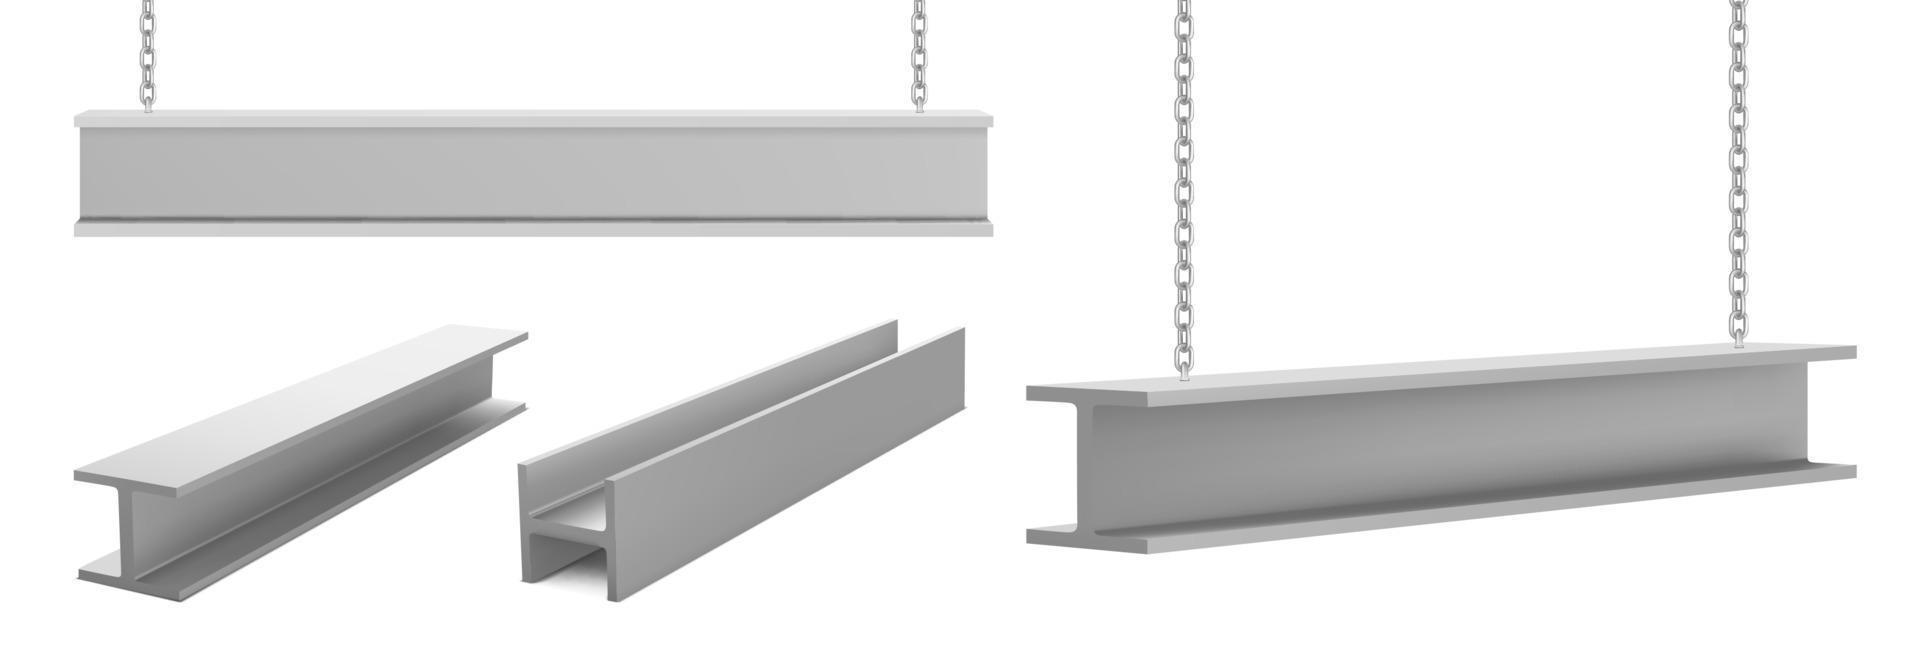 Steel beams metal industrial girders on chain vector